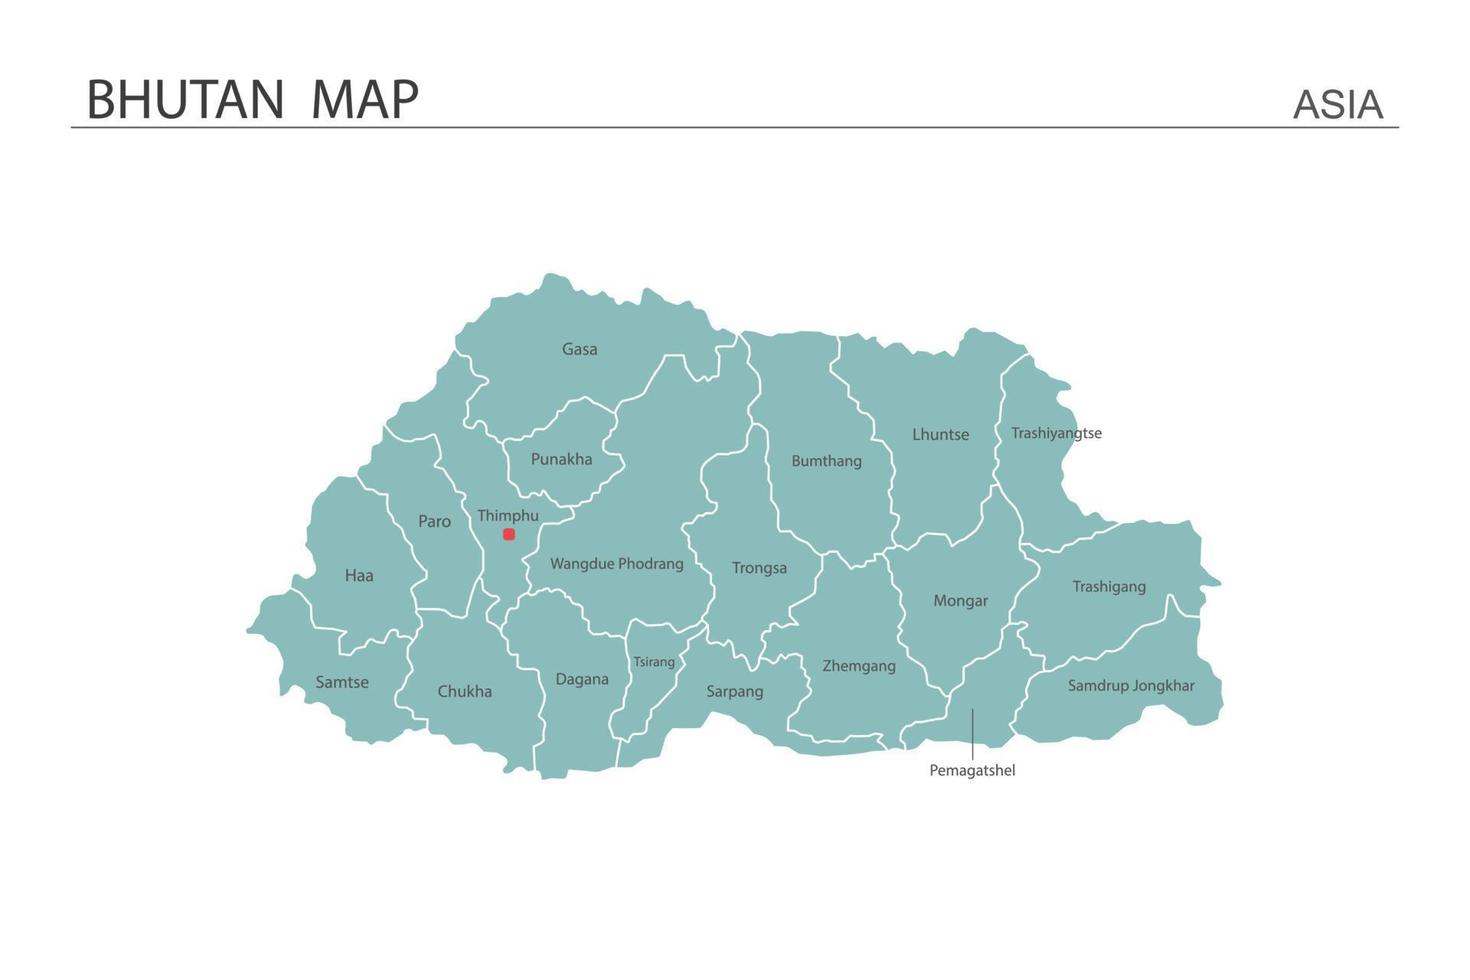 Bután mapa ilustración vectorial sobre fondo blanco. el mapa tiene toda la provincia y marca la ciudad capital de Bután. vector